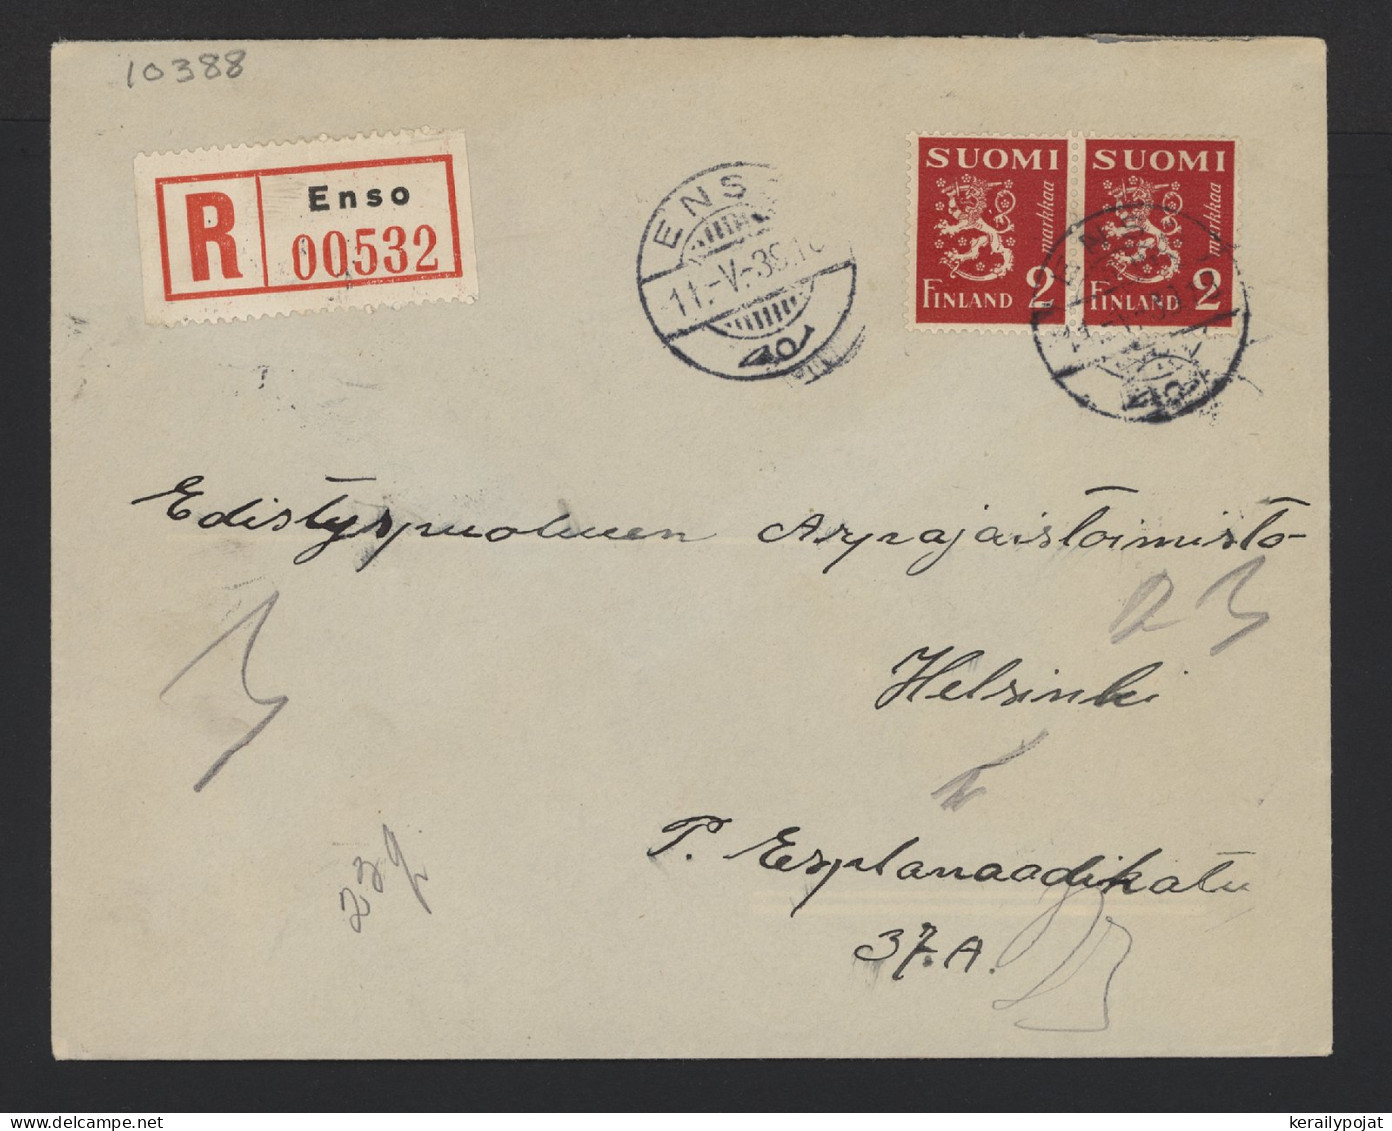 Finland 1939 Enso Registered Cover__(10388) - Briefe U. Dokumente